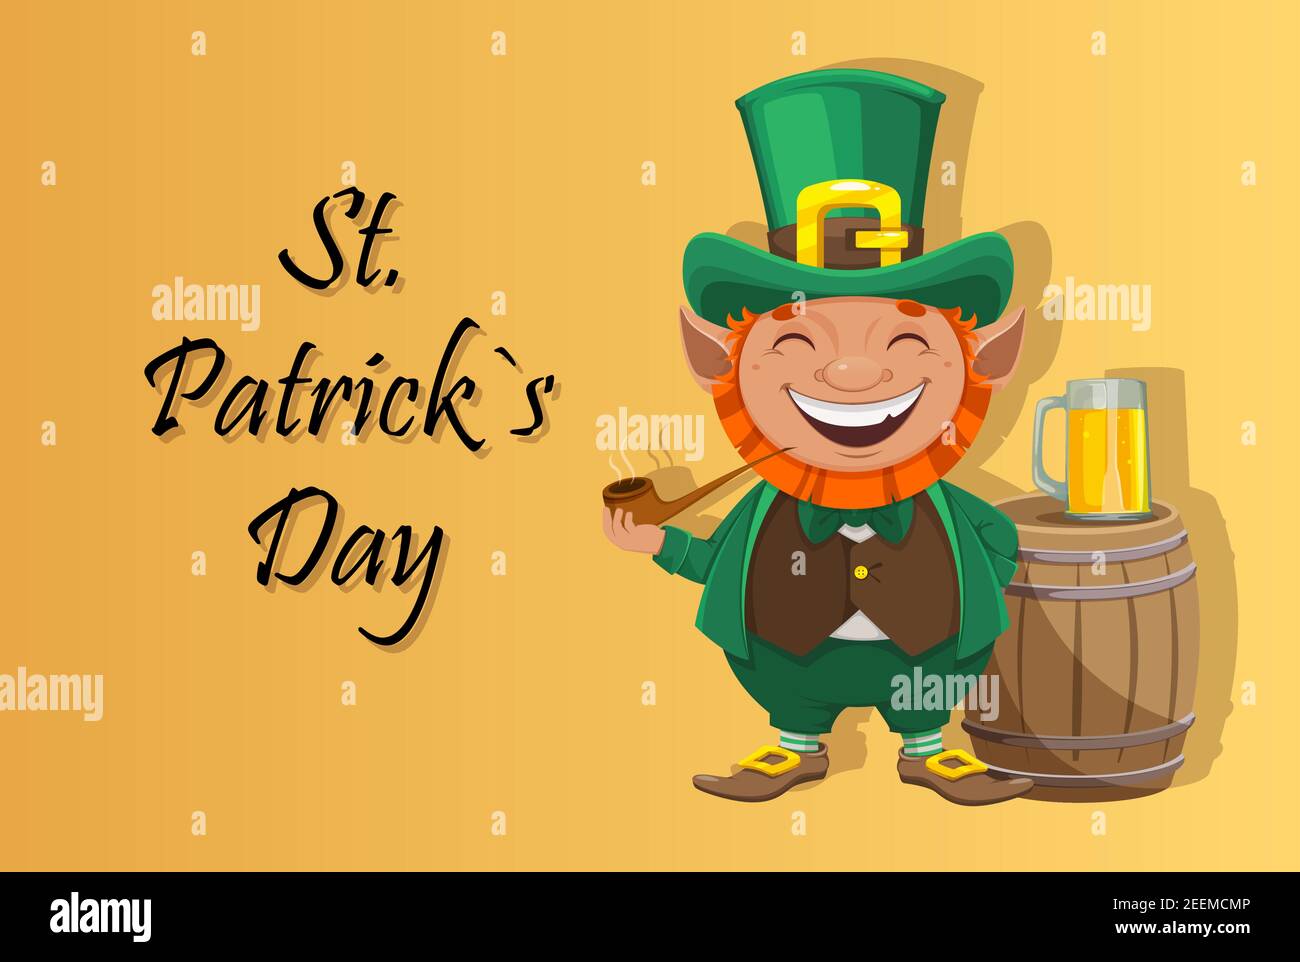 Stock Vektor Kobold. Glückwunschkarte zum St. Patrick's Day. Fröhliche Kobold Zeichentrickfigur mit rauchenden Pfeife und Bier Stock Vektor